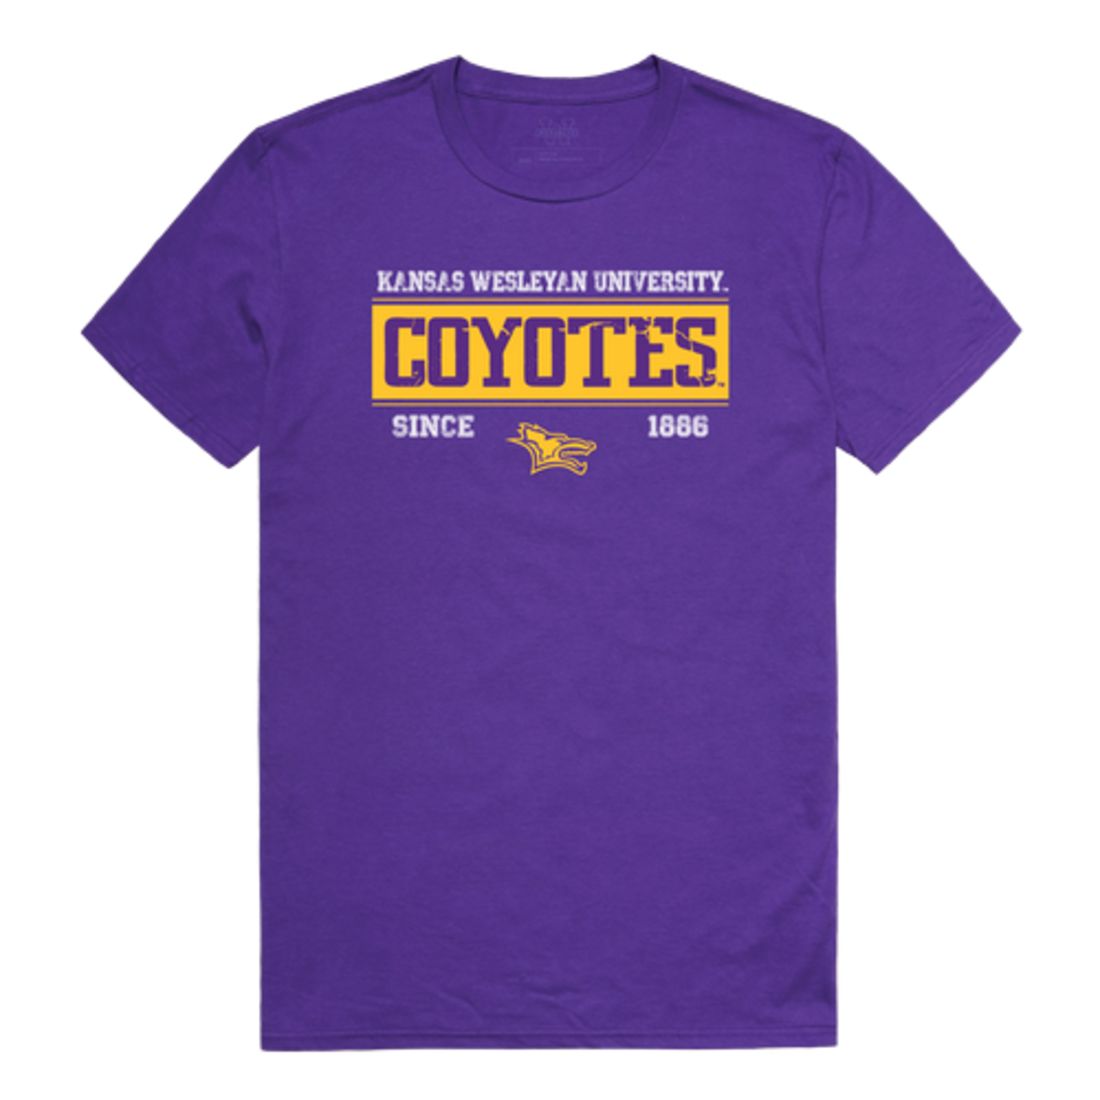 Kansas Wesleyan University Coyotes Established T-Shirt